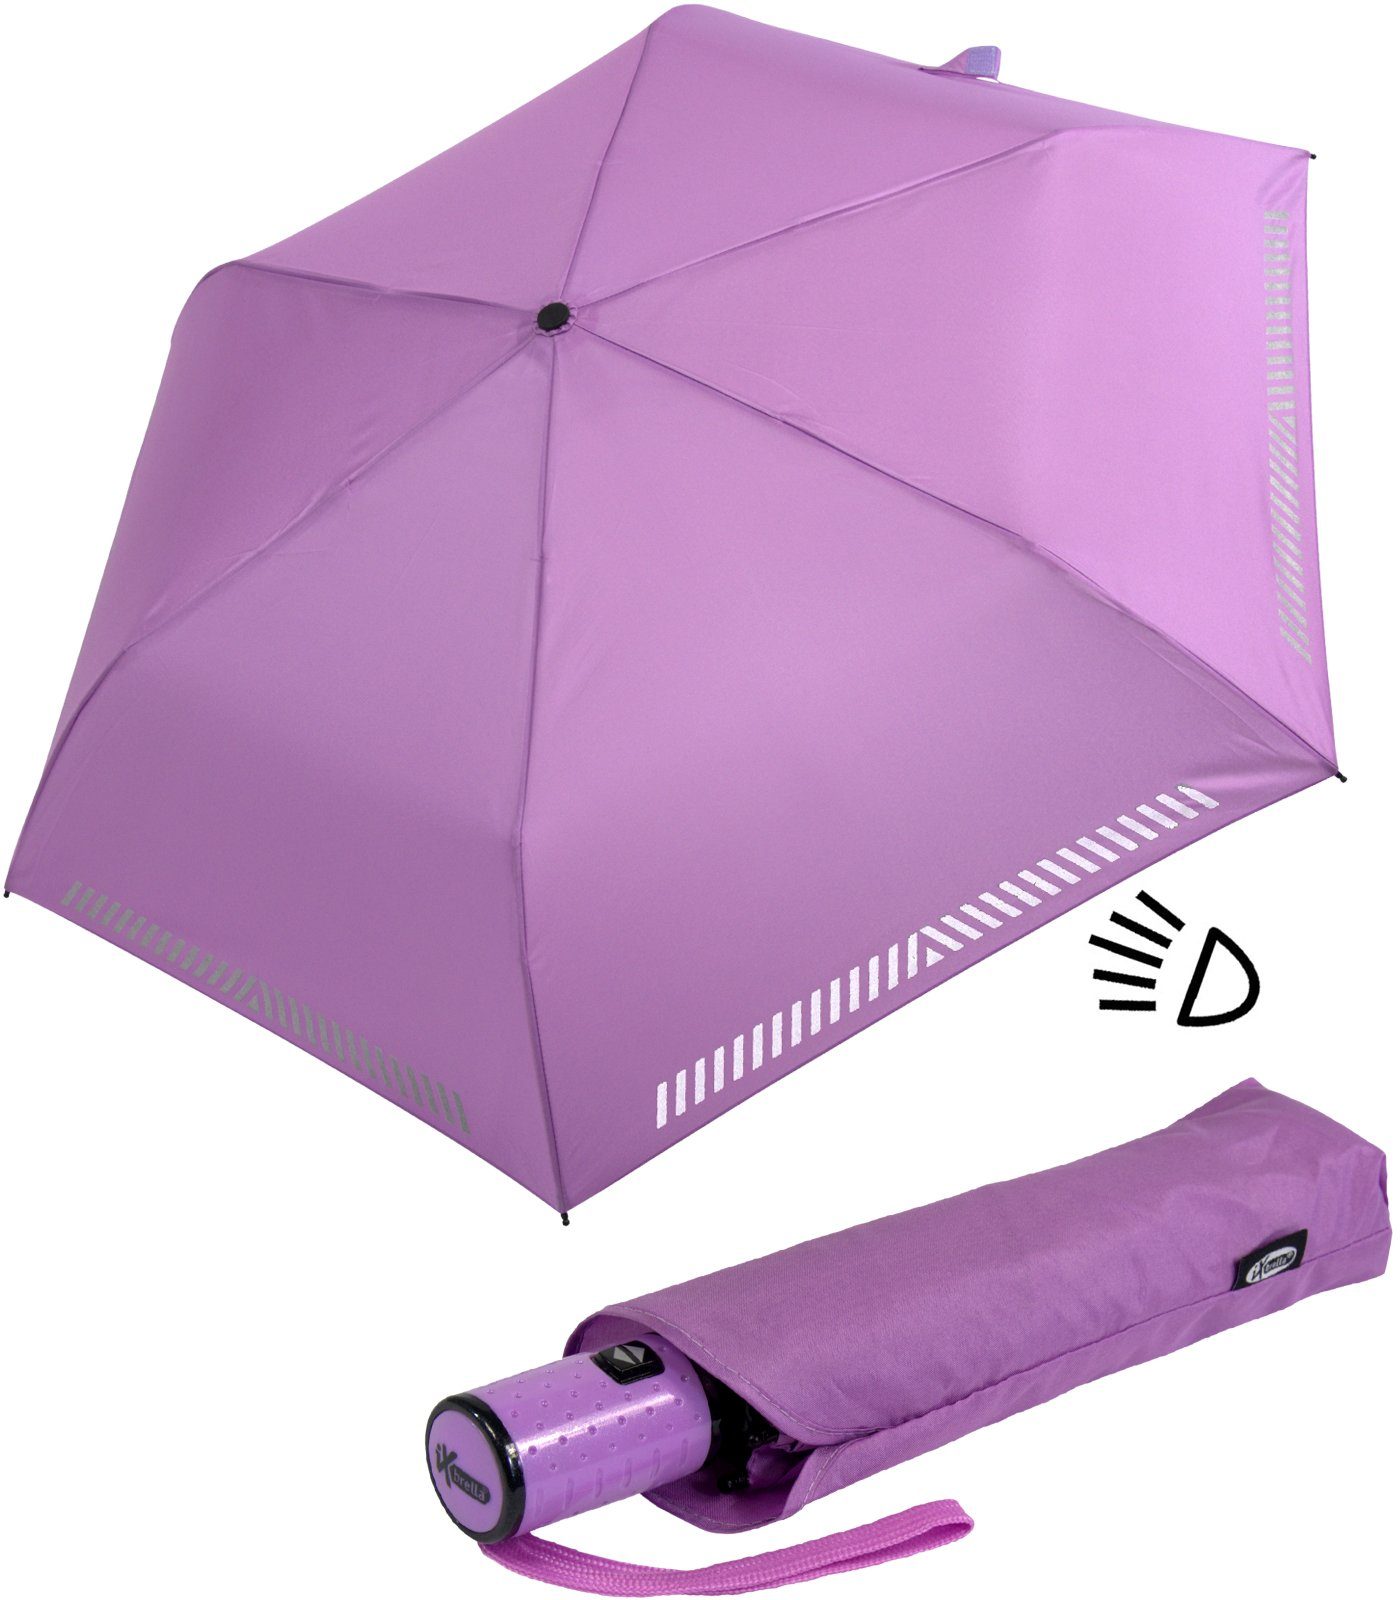 Kinderschirm iX-brella Taschenregenschirm hell-lila Reflex-Streifen durch Auf-Zu-Automatik, - Sicherheit mit reflektierend,